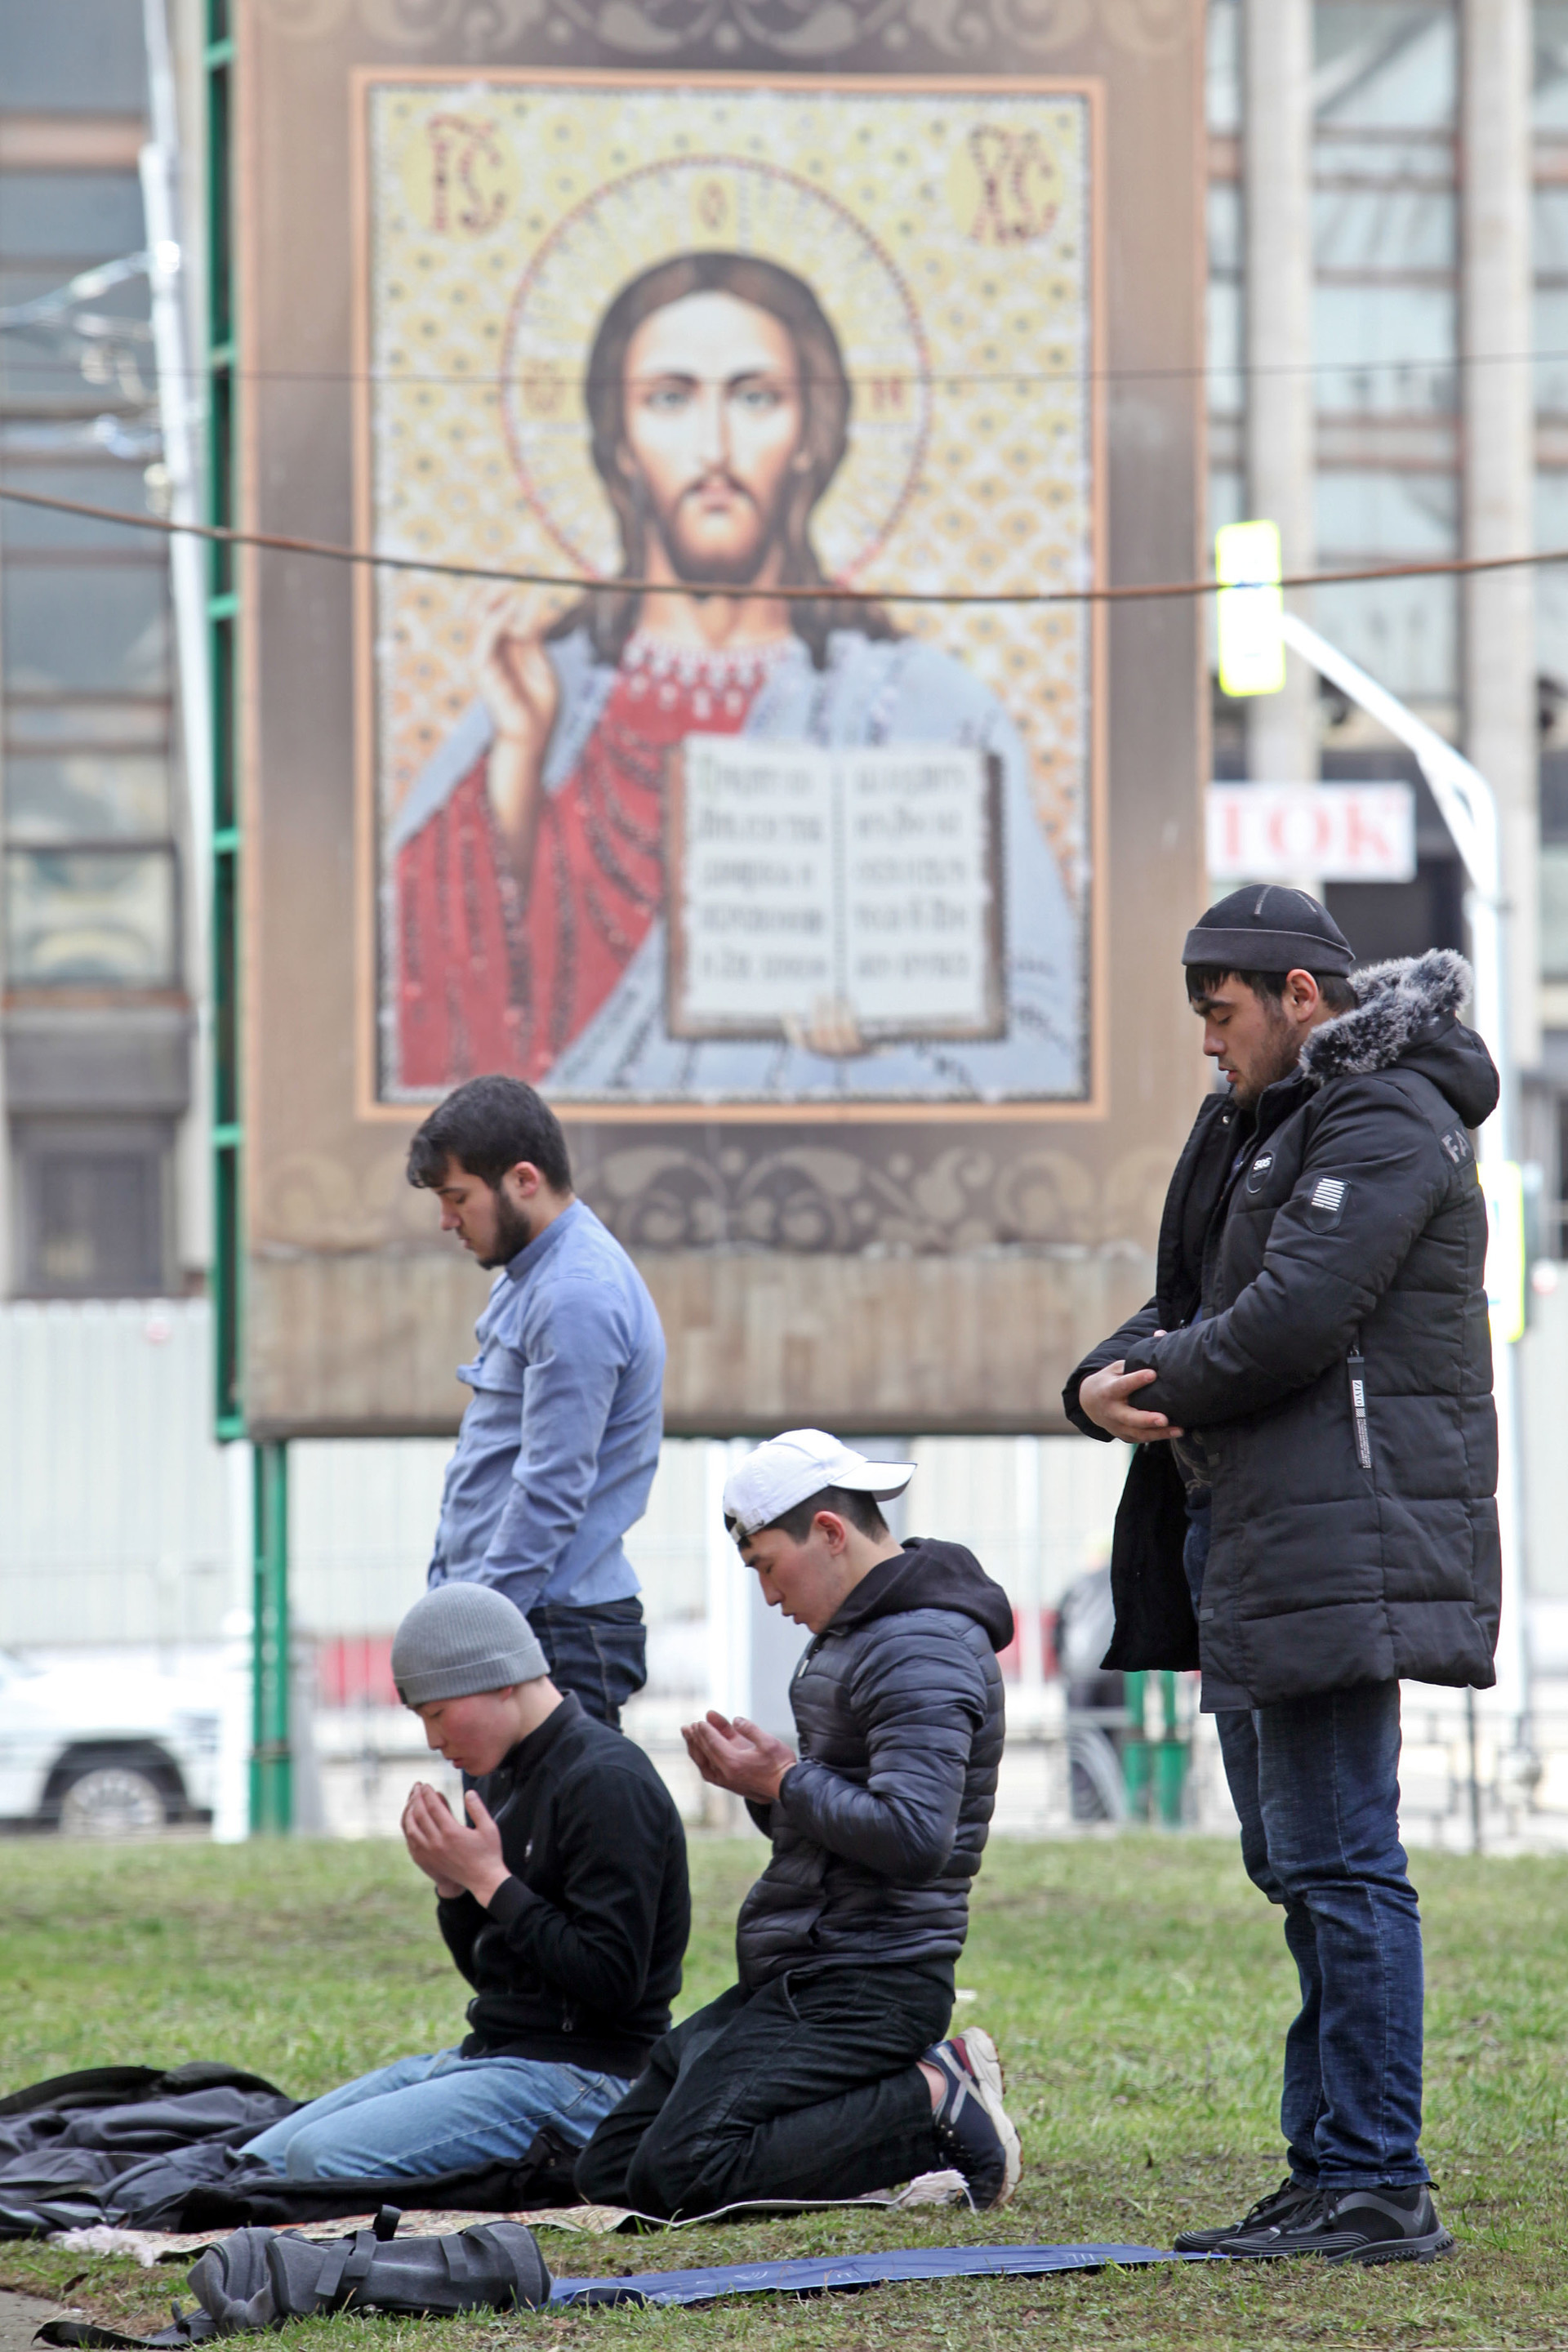 Umat Islam menunaikan salat Zuhur di taman, di depan gereja Ortodoks, tak jauh dari Masjid Agung Moskow, Jumat (20/3). Mereka terpaksa salat di luar karena tidak tahu bahwa masjid ditutup untuk mengantisipasi penyebaran virus Corona.